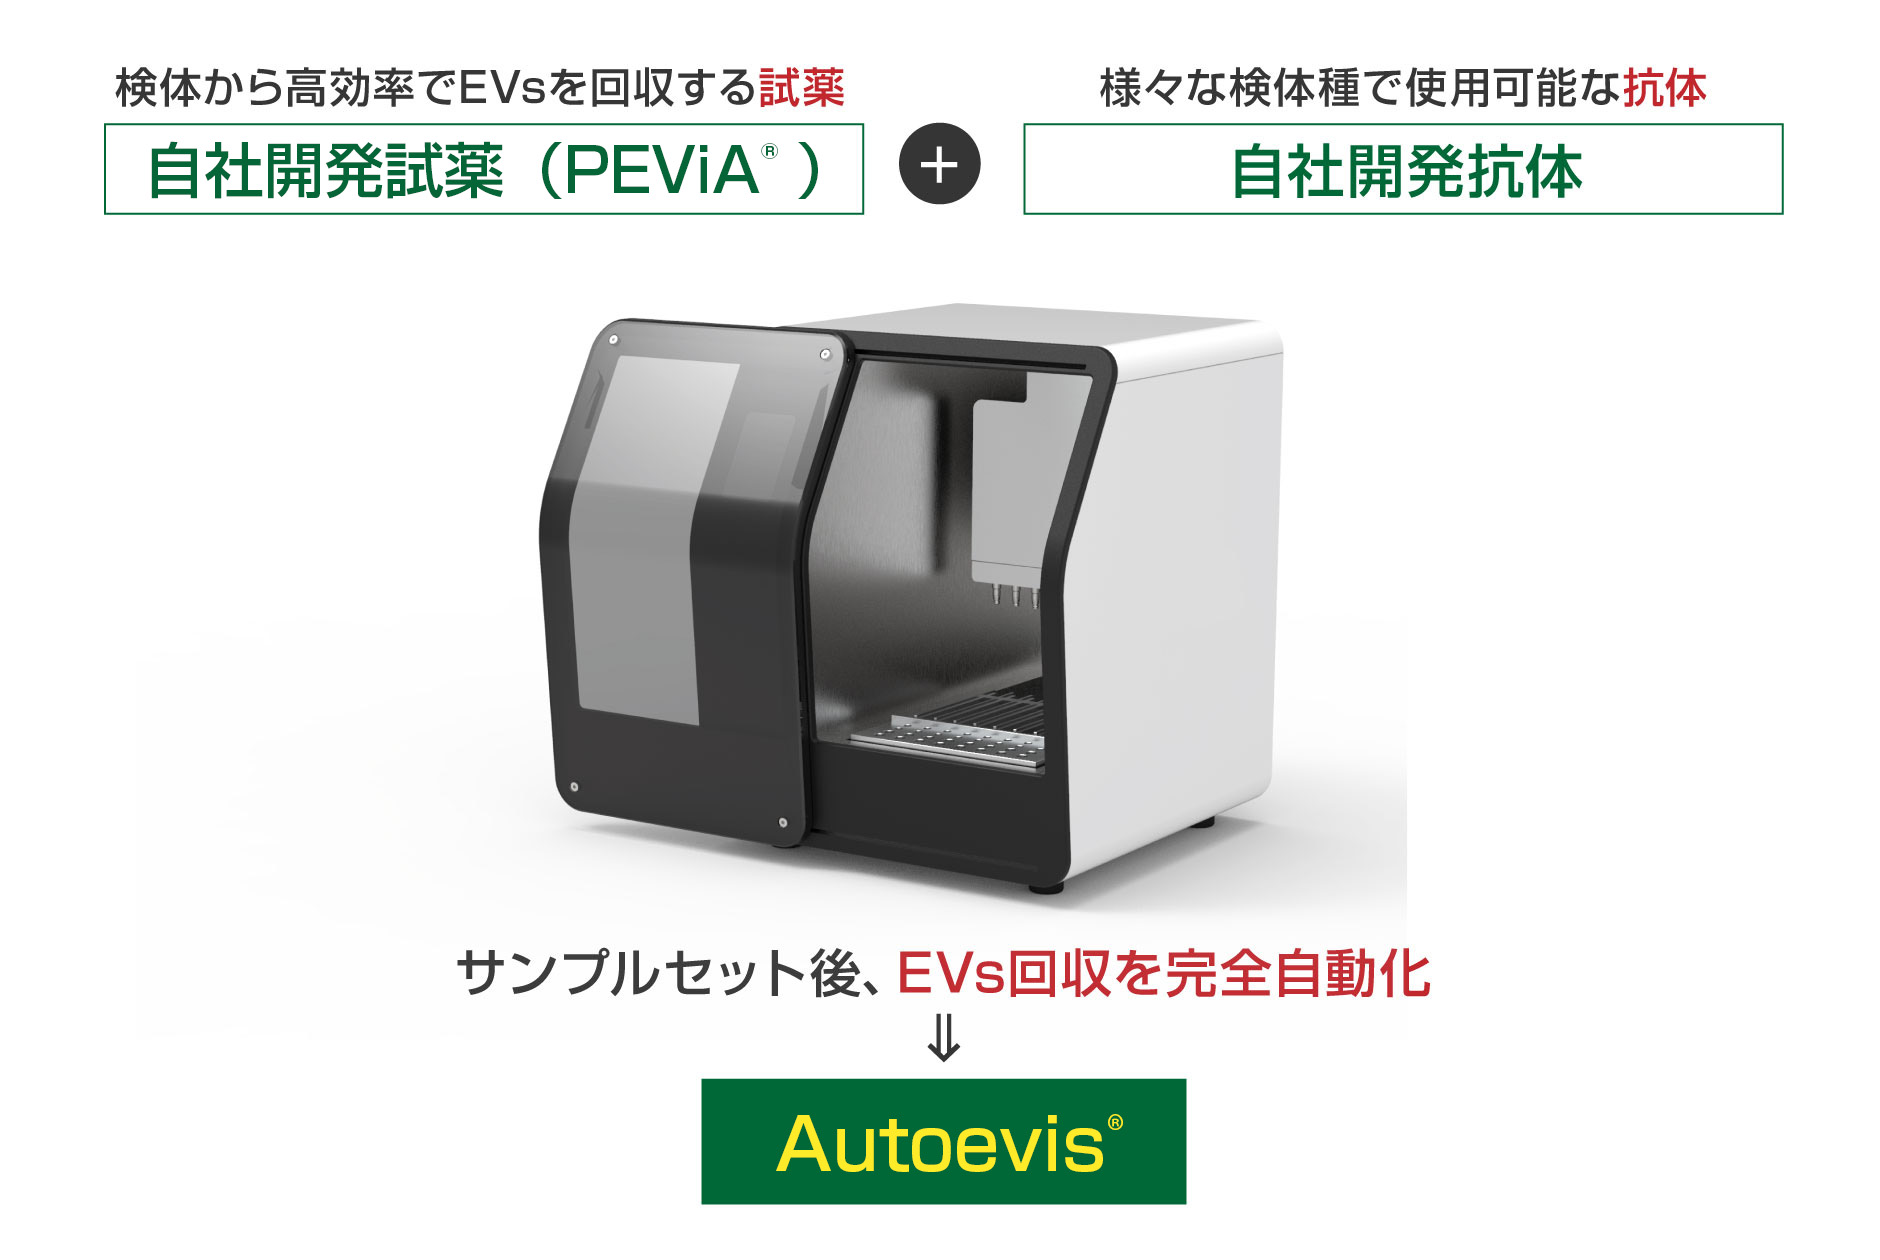 サンプルセット後、EVs回収を完全自動化 Autoevis®